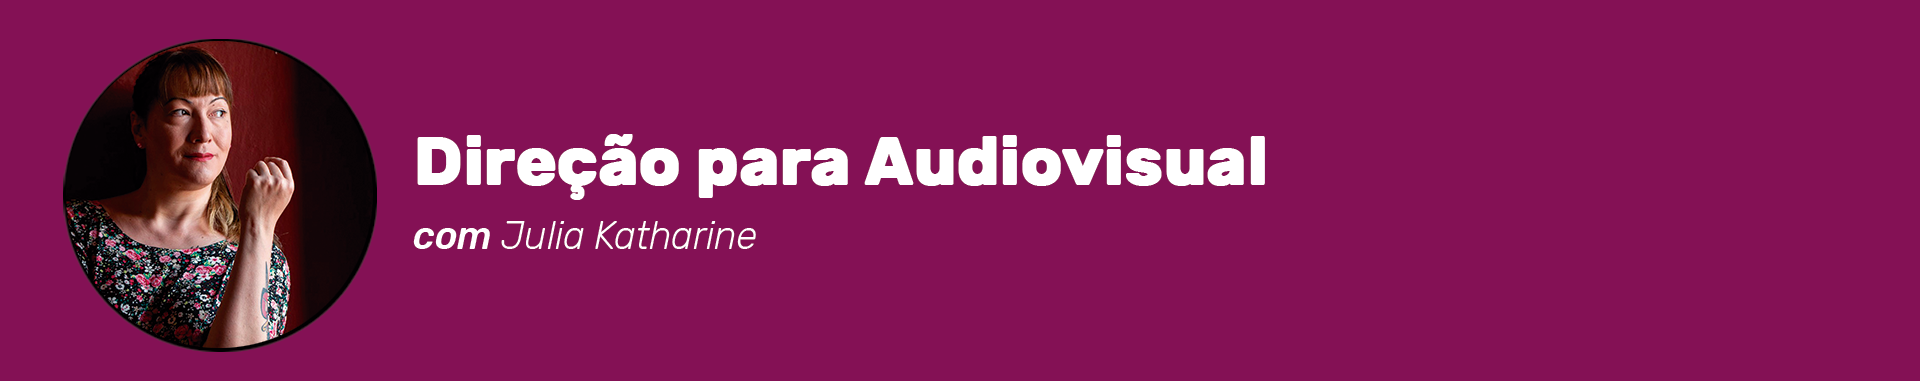 Cabeçalho do curso Direção para Audiovisual com Julia Katharine